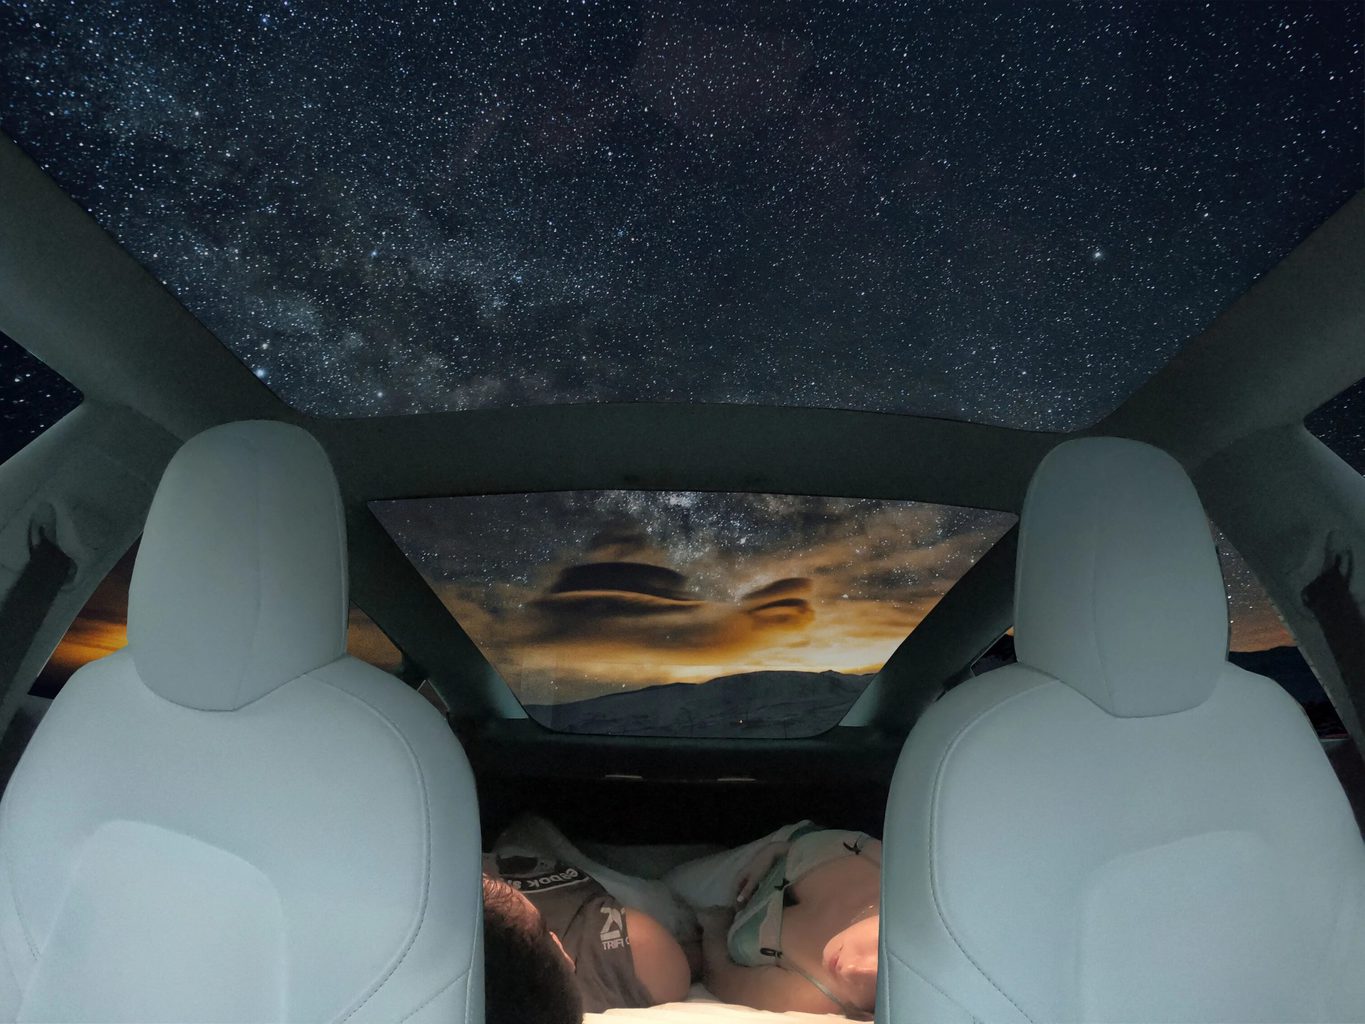 Matelas pour dormir dans la Model 3 - Tesla Model 3 - Forum